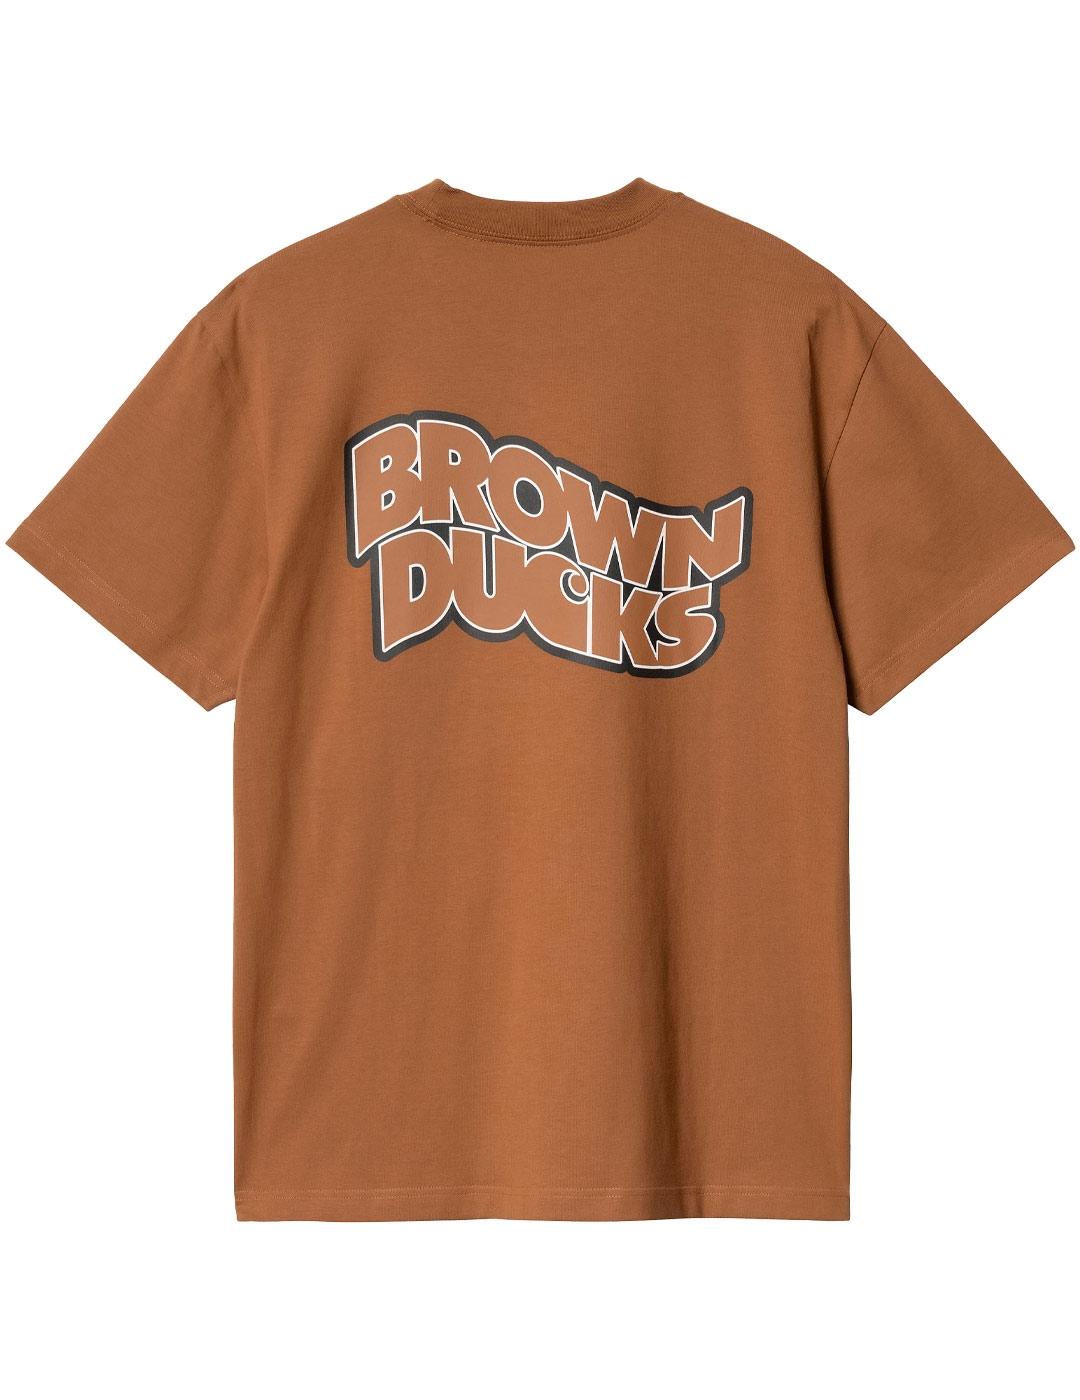 Camiseta Carhartt Wip Brown Ducks Marrón